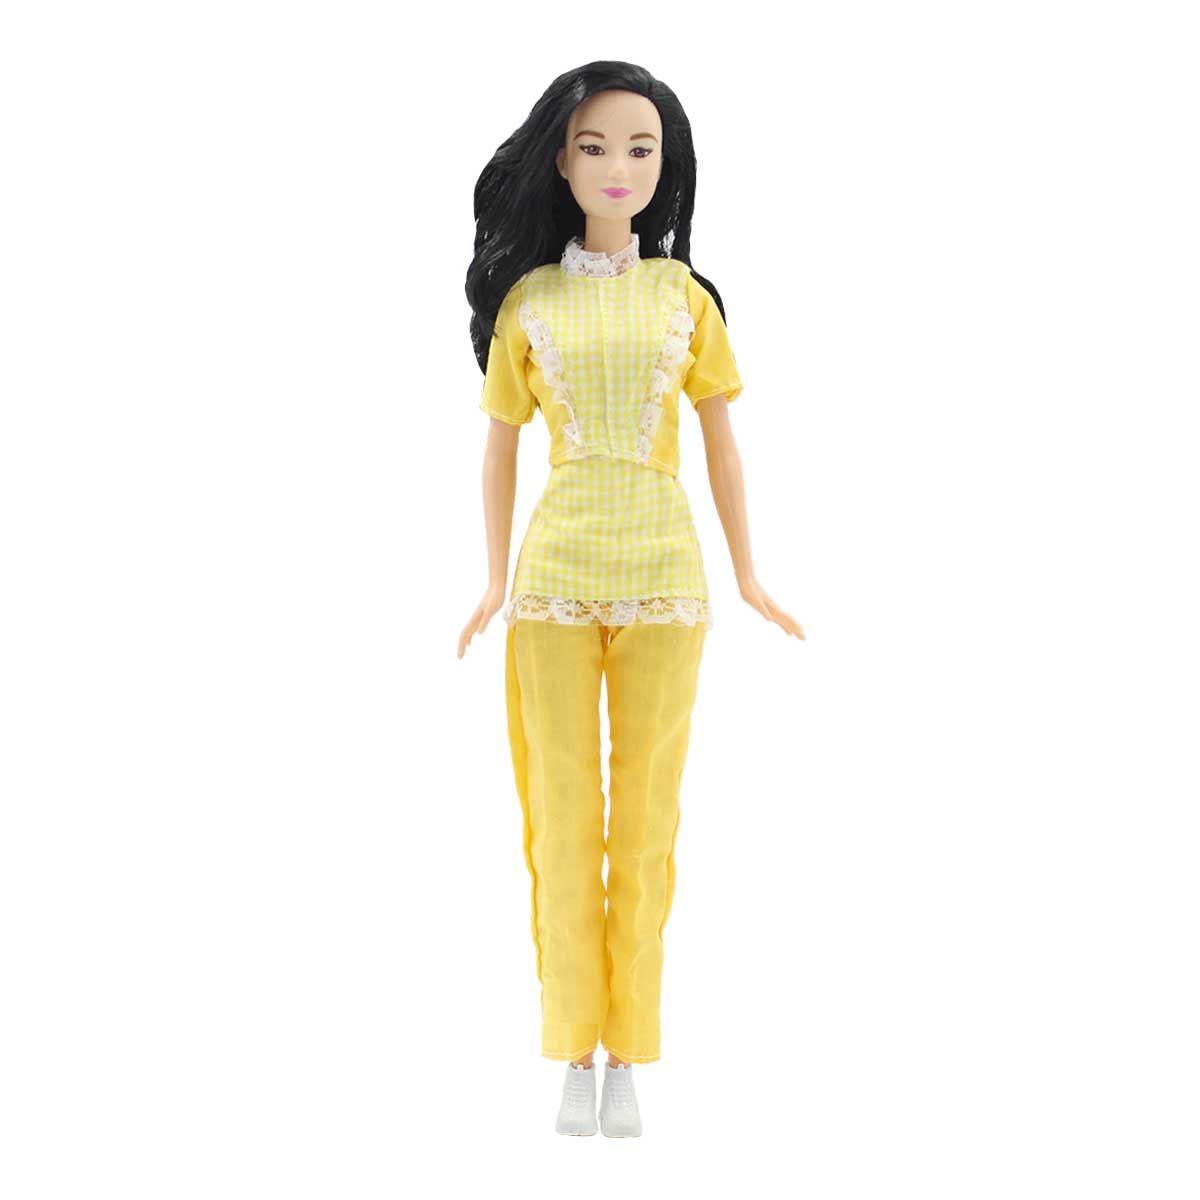 Одежда Dolls Accessories для Барби и других кукол 29 см Горничная желтый